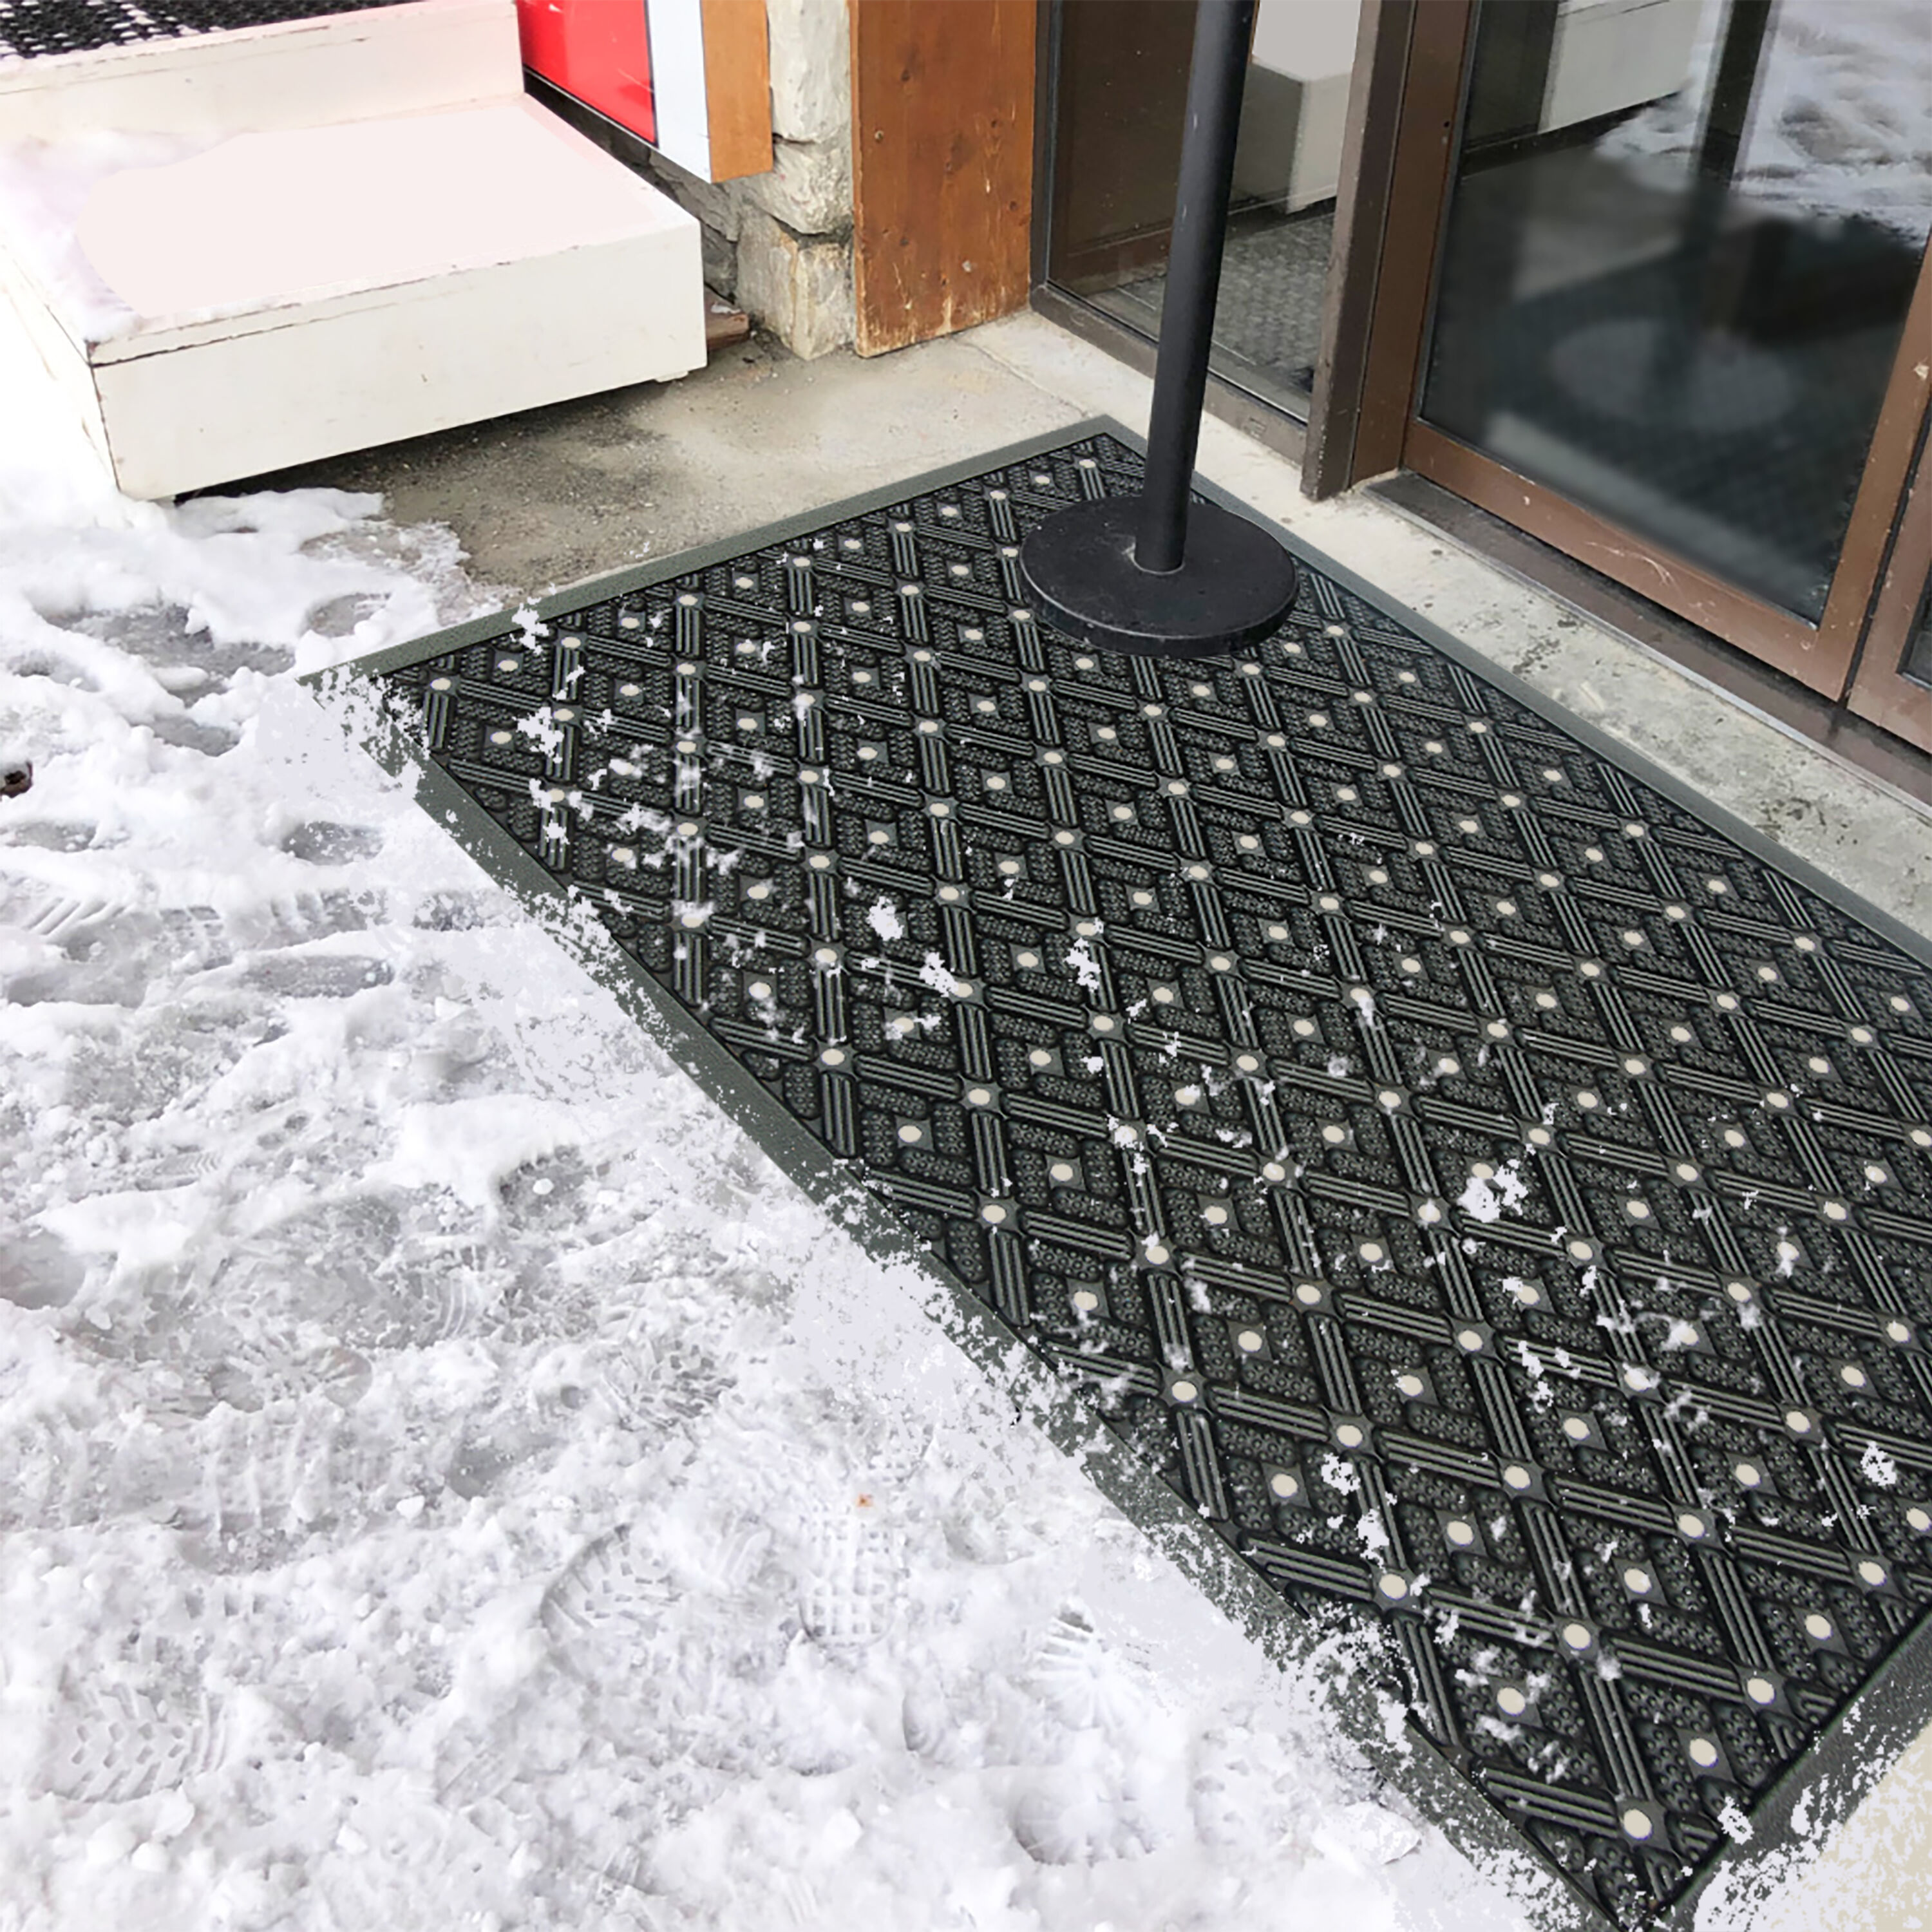 Project Source 2-ft x 3-ft Black Rectangular Outdoor Door Mat in the Mats  department at